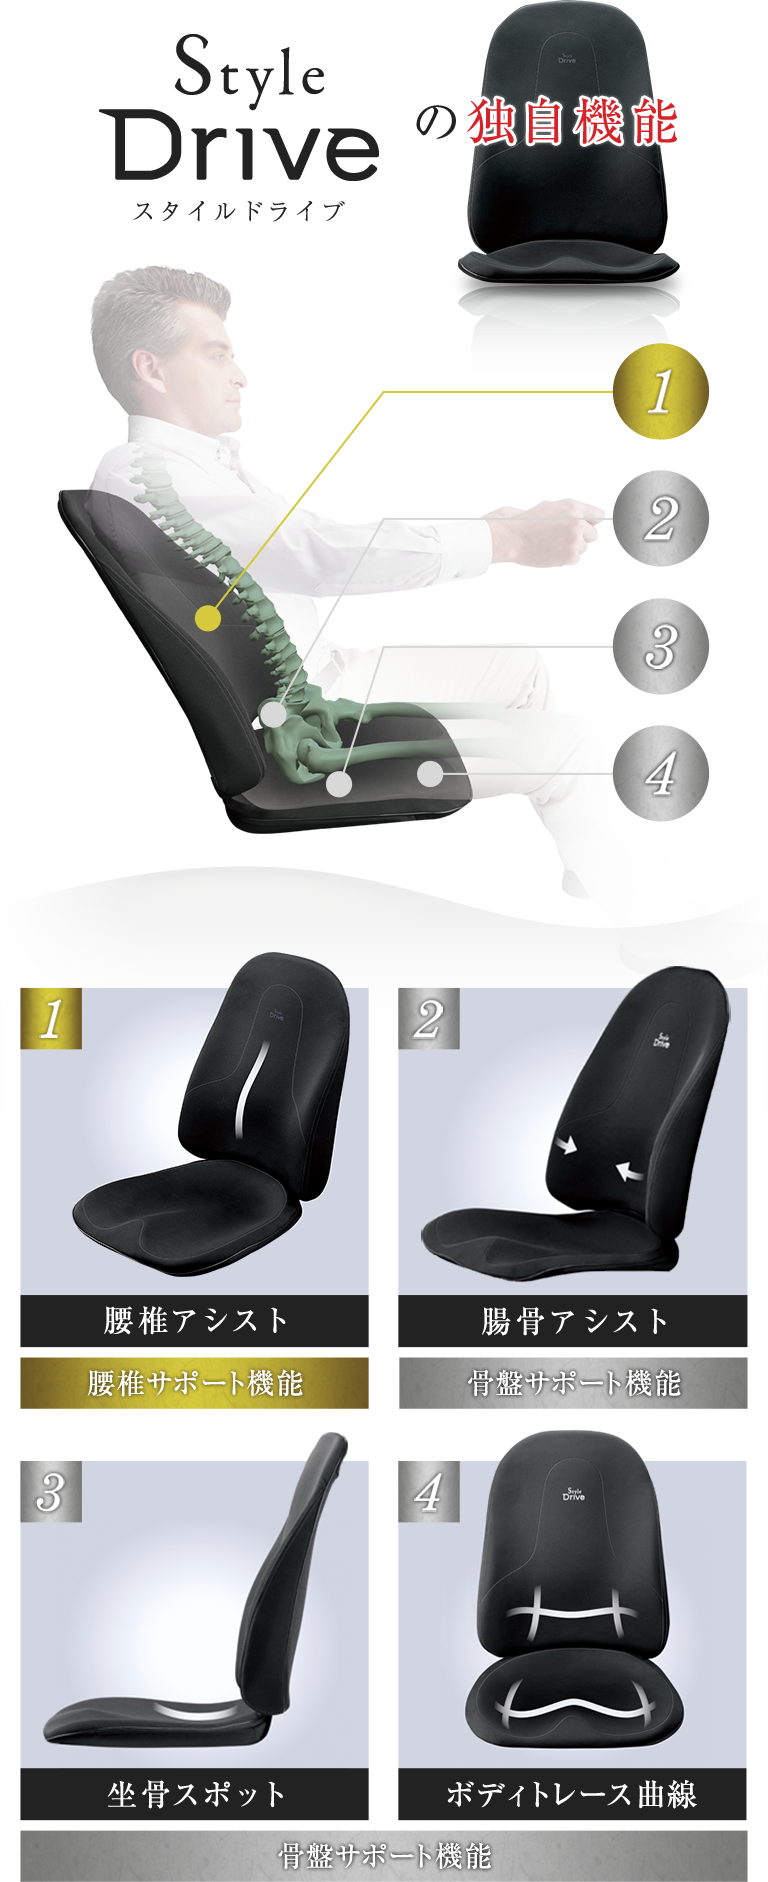 スタイルドライブの独自機能　腰椎アシスト腰椎サポート機能腸骨アシスト骨盤サポート機能